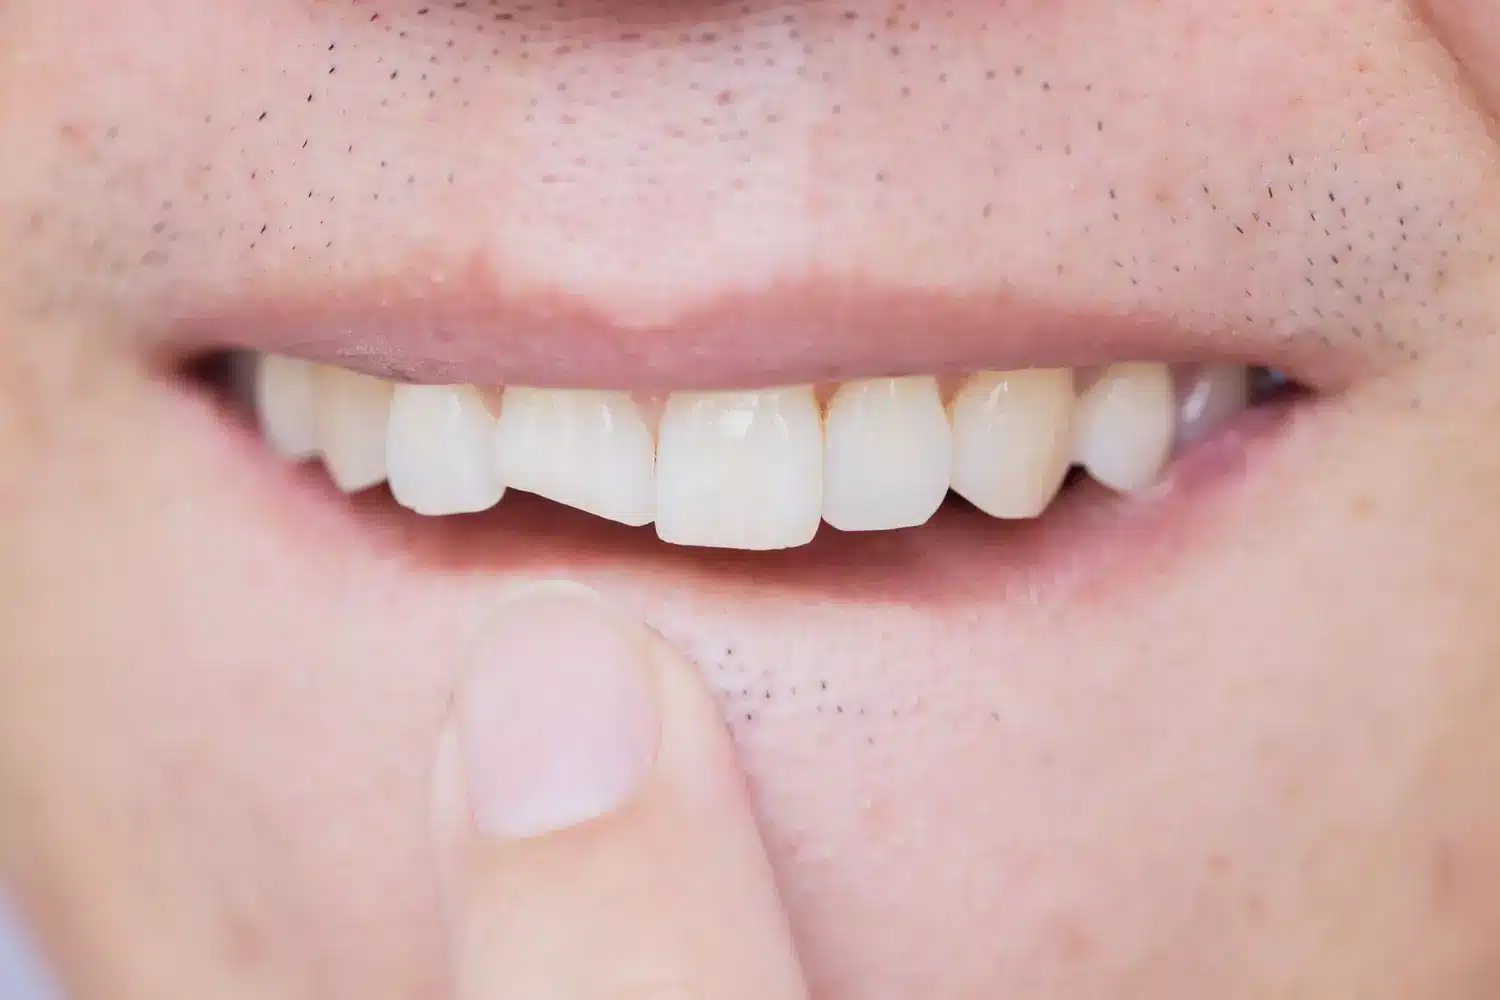 Les conséquences d’une dent cassée et comment les éviter